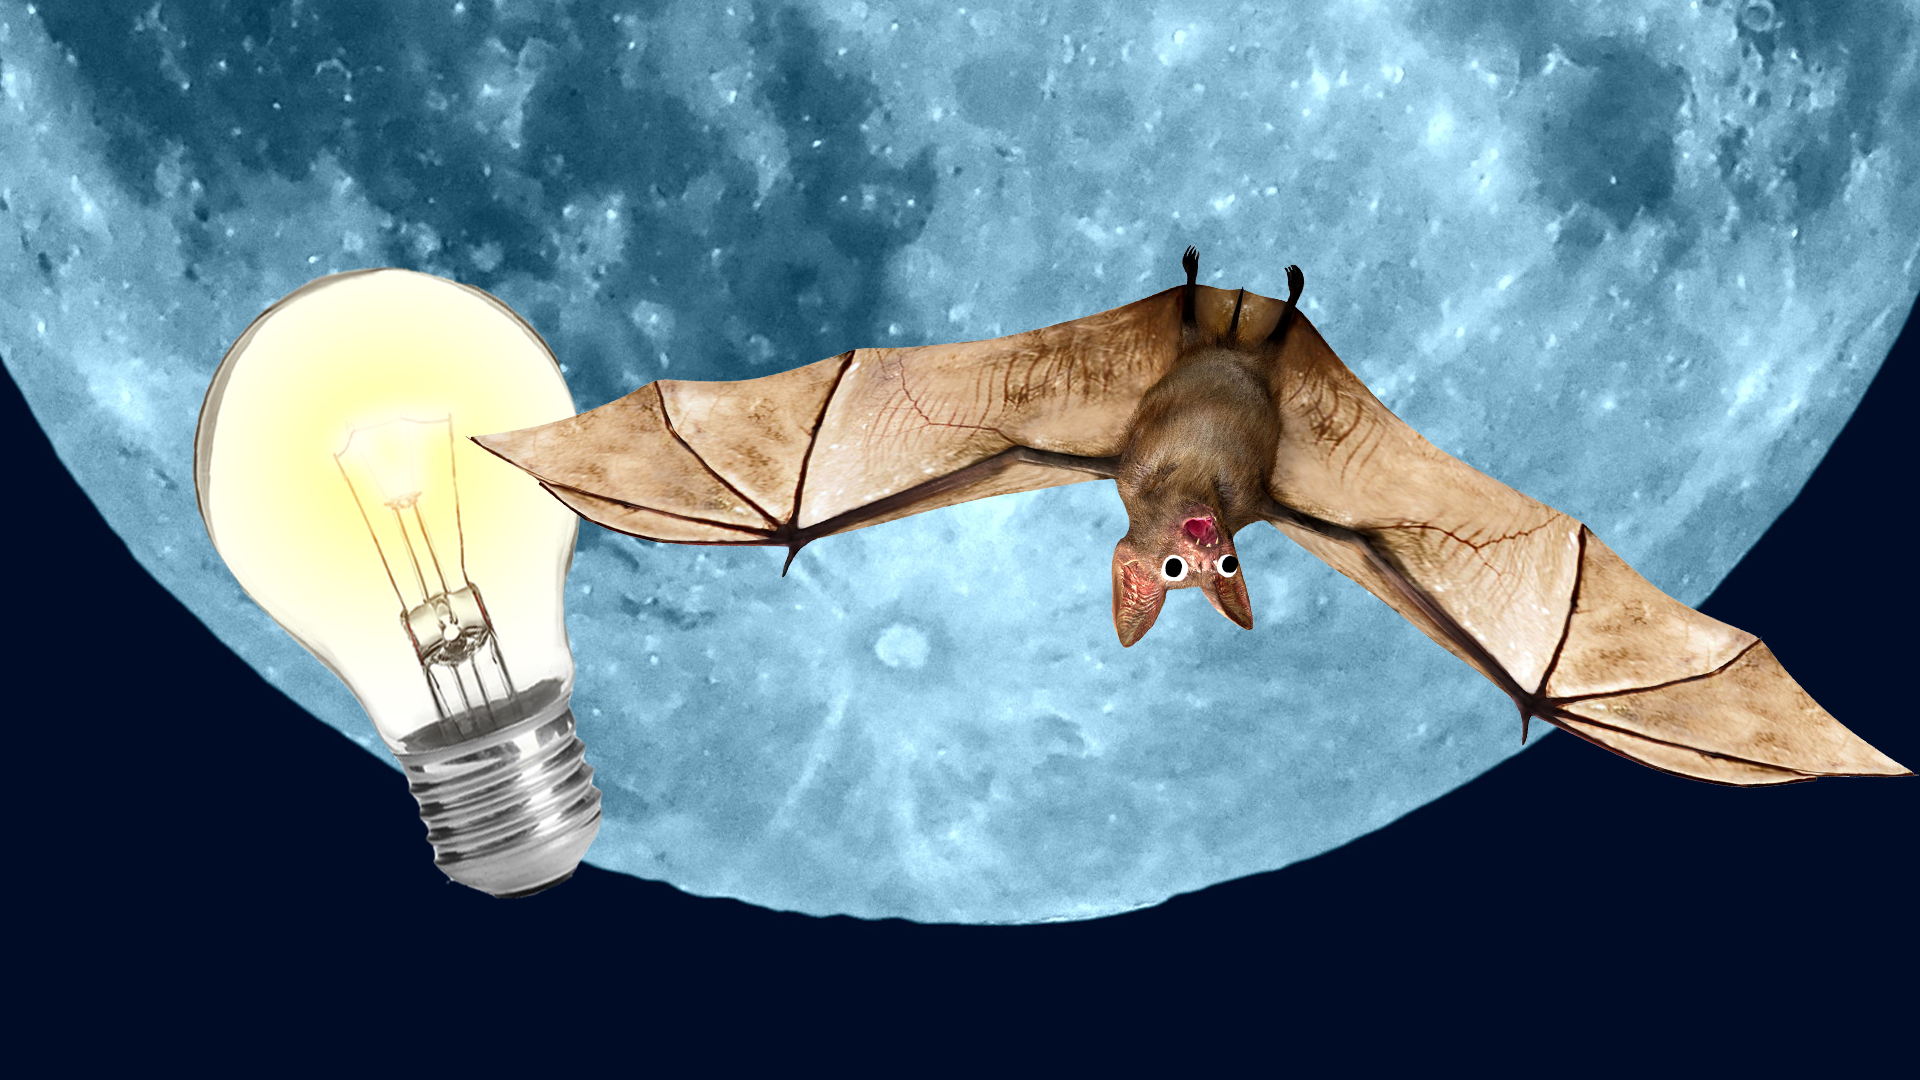 An upside down bat and a lightbulb